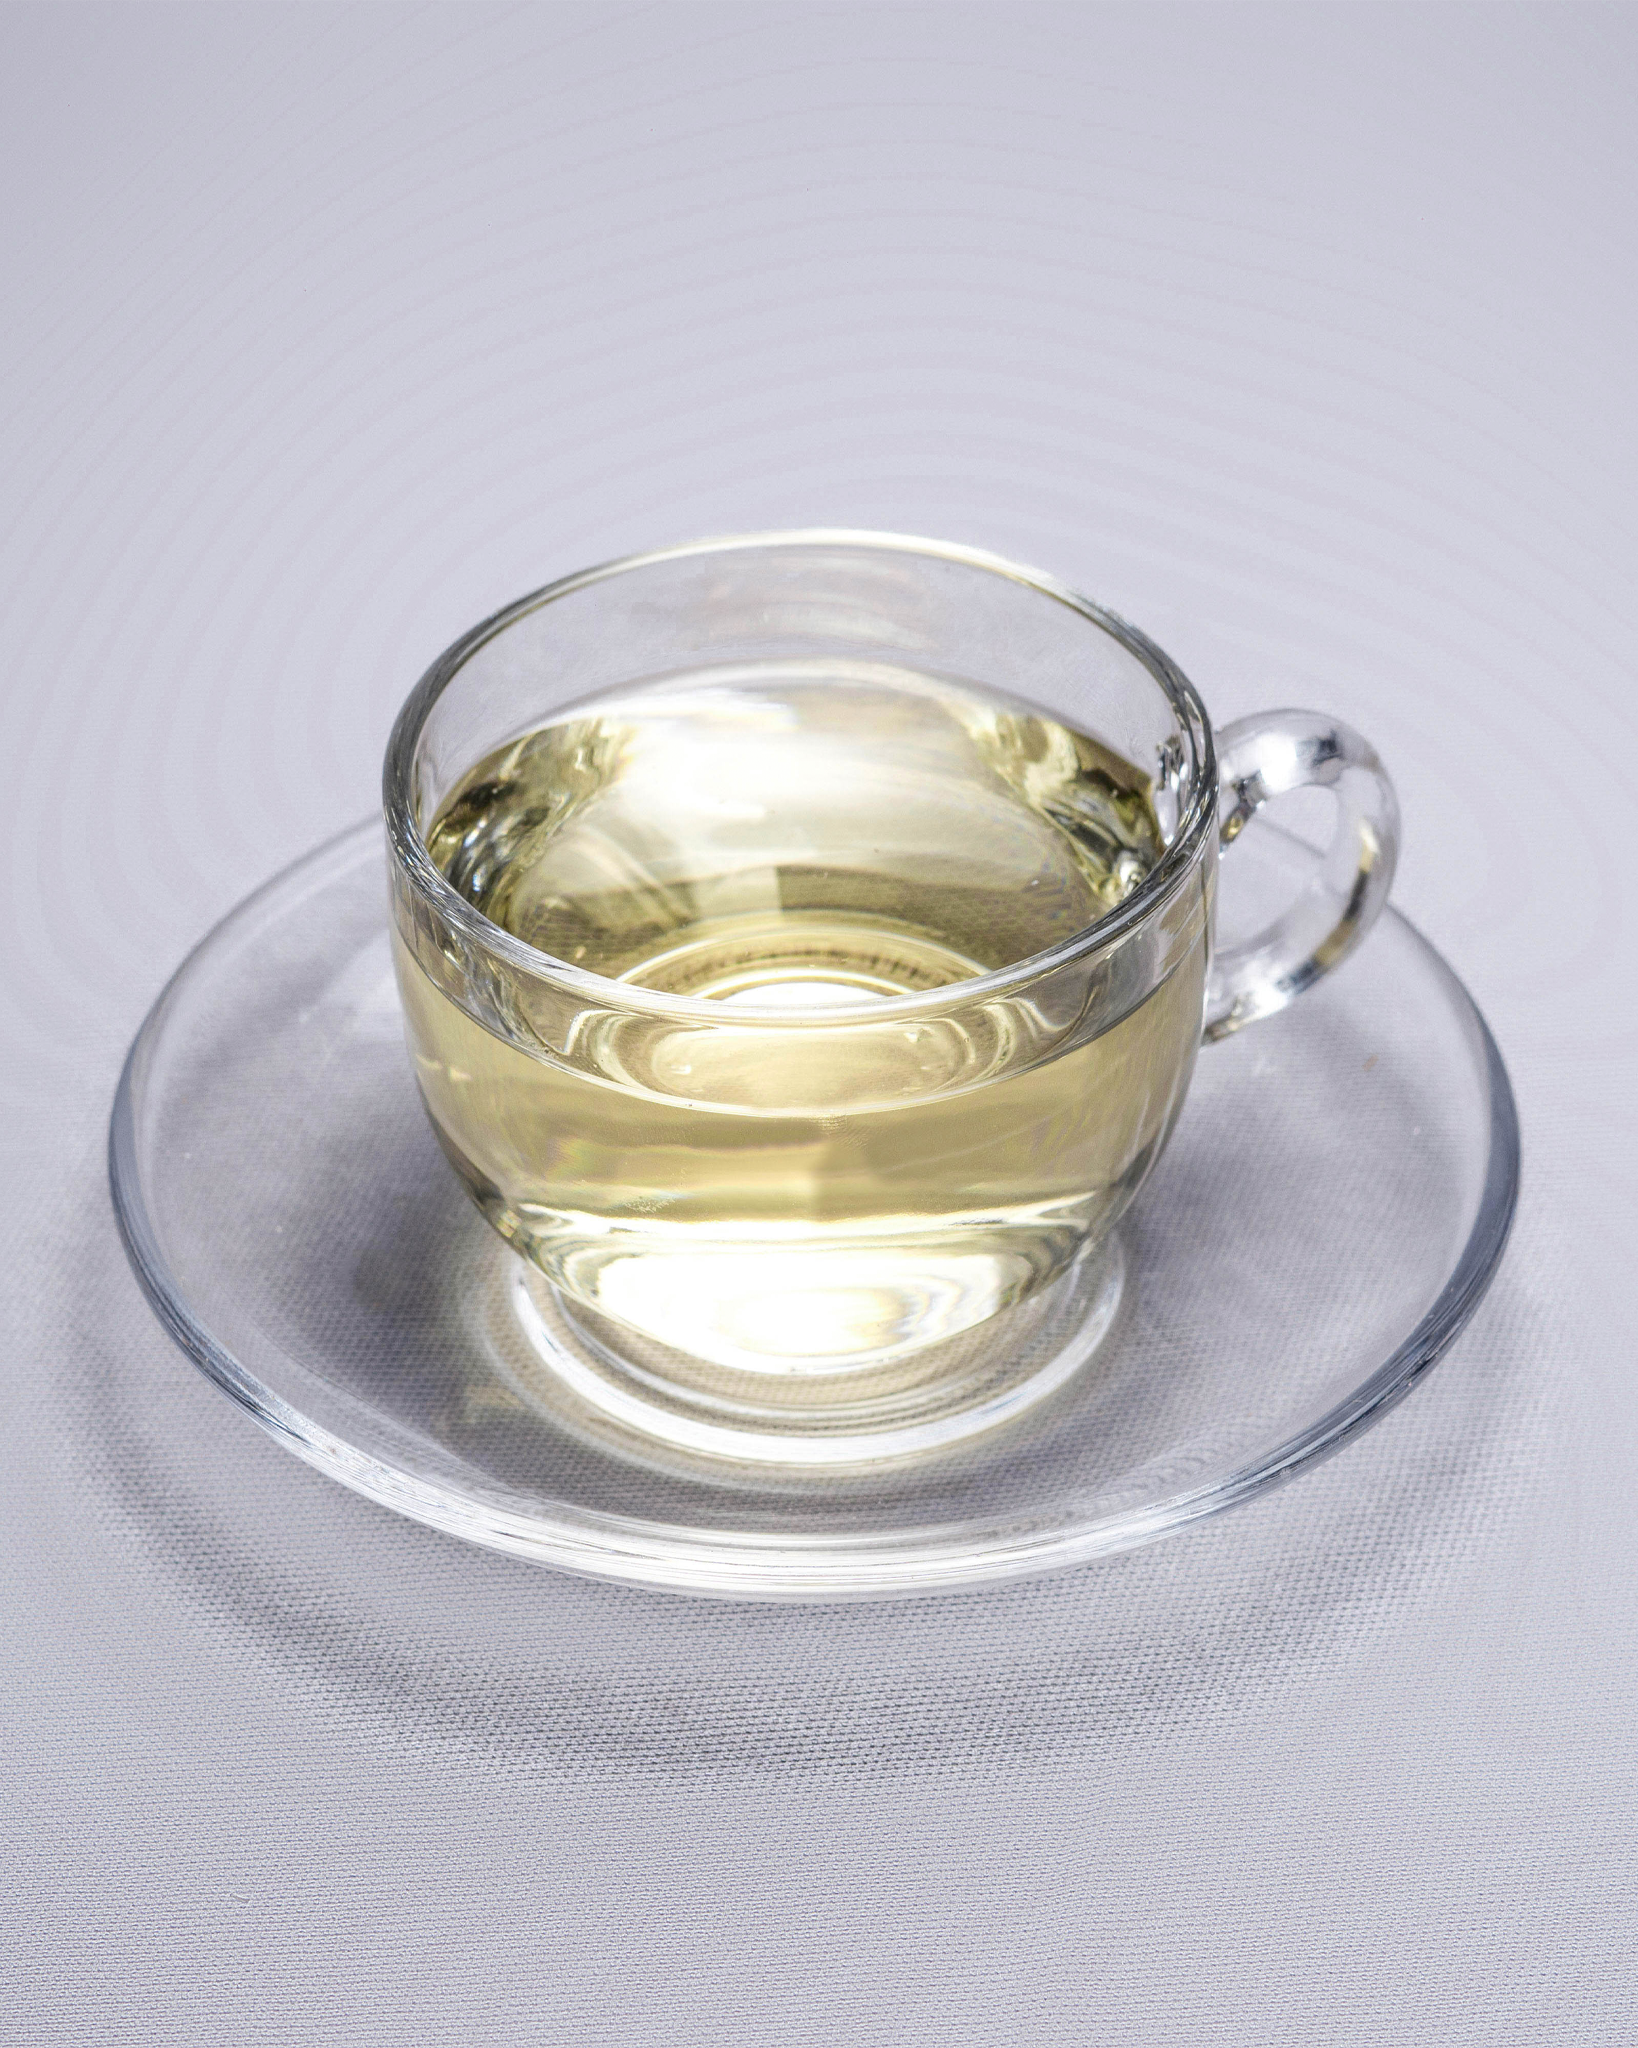 White Tea - The anti-ageing rejuvenator